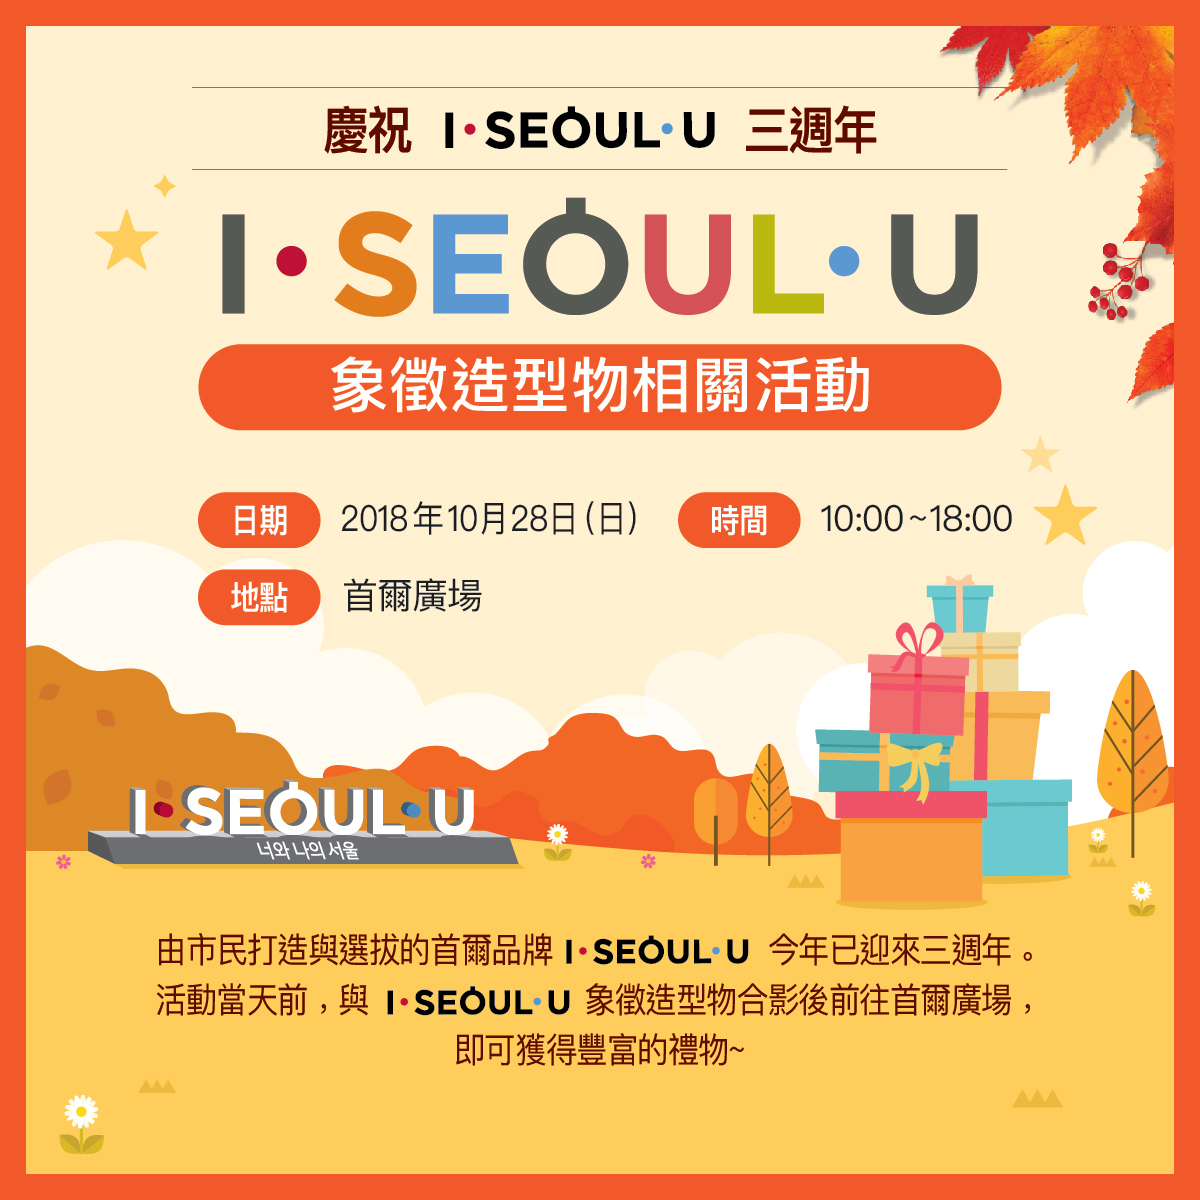 慶祝 I·SEOUL·U 三週年
象徵造型物相關活動
日期：2018年10月28日（日）
時間：10:00~18:00
地點：首爾廣場
你和我的首爾
由市民打造與選拔的首爾品牌 I·SEOUL·U 今年已迎來三週年。活動當天前，與 I·SEOUL·U 象徵造型物合影後前往首爾廣場，即可獲得豐富的禮物~
